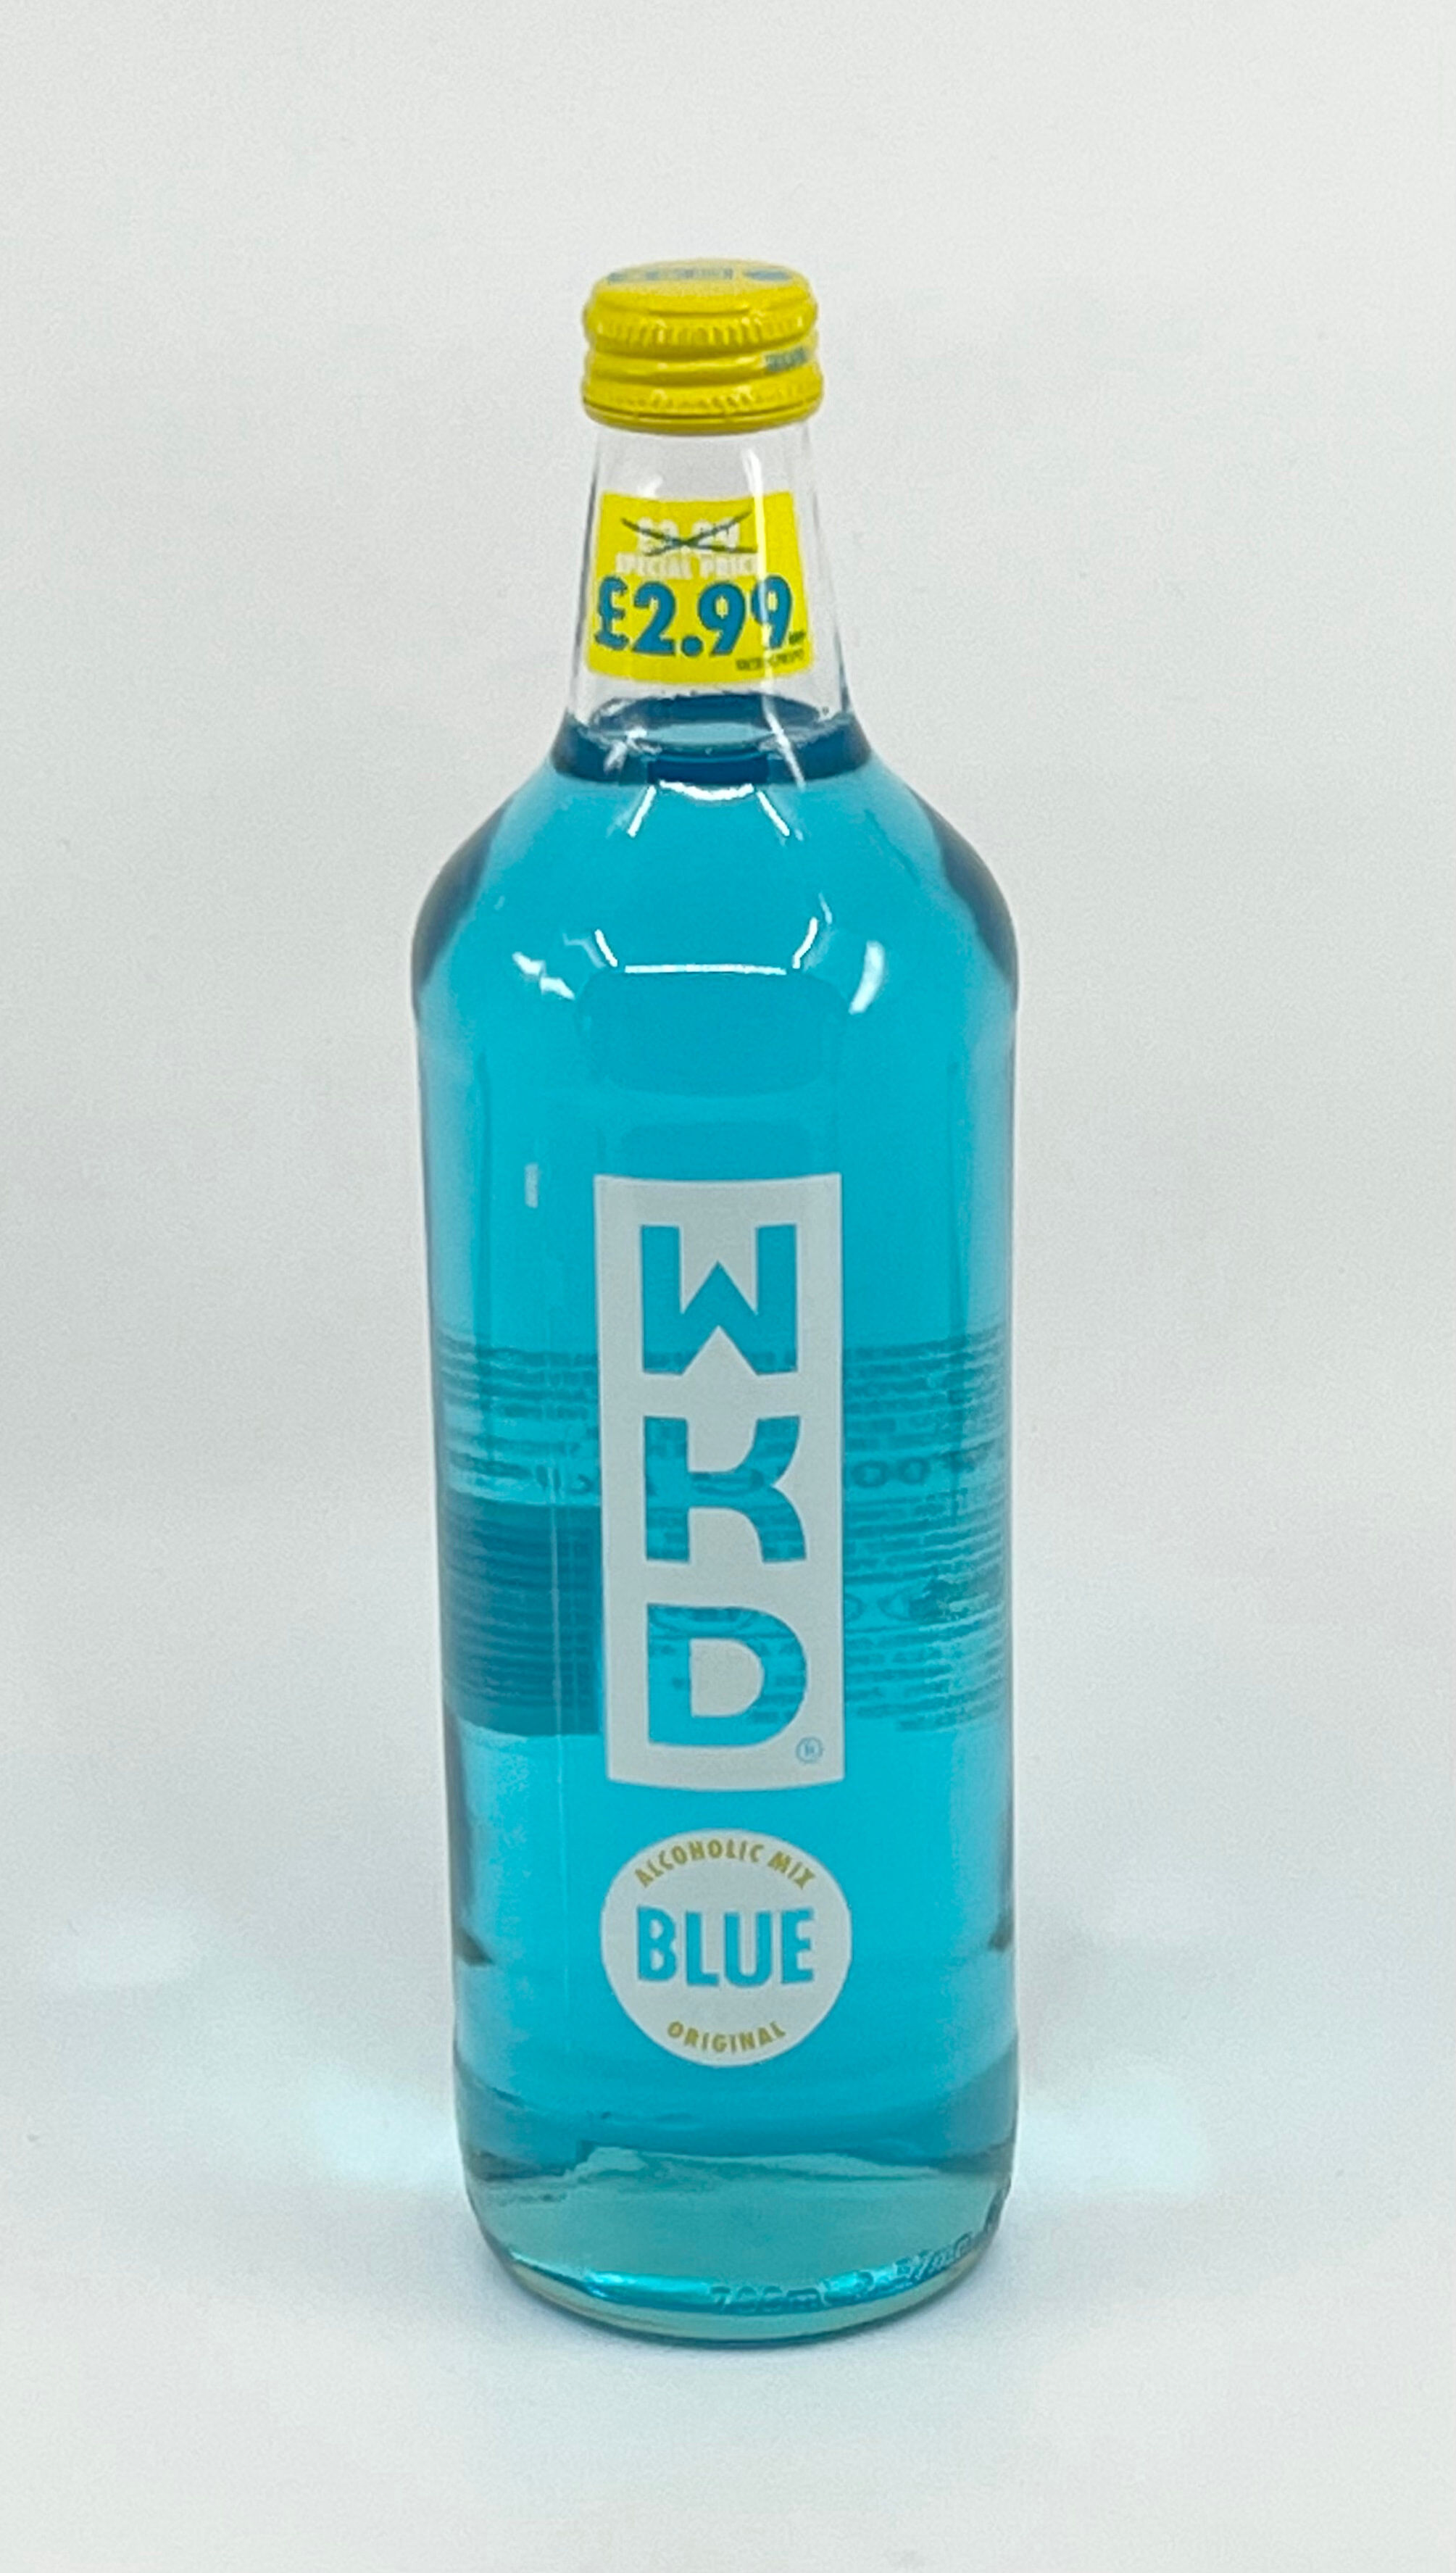 WKD BLUE